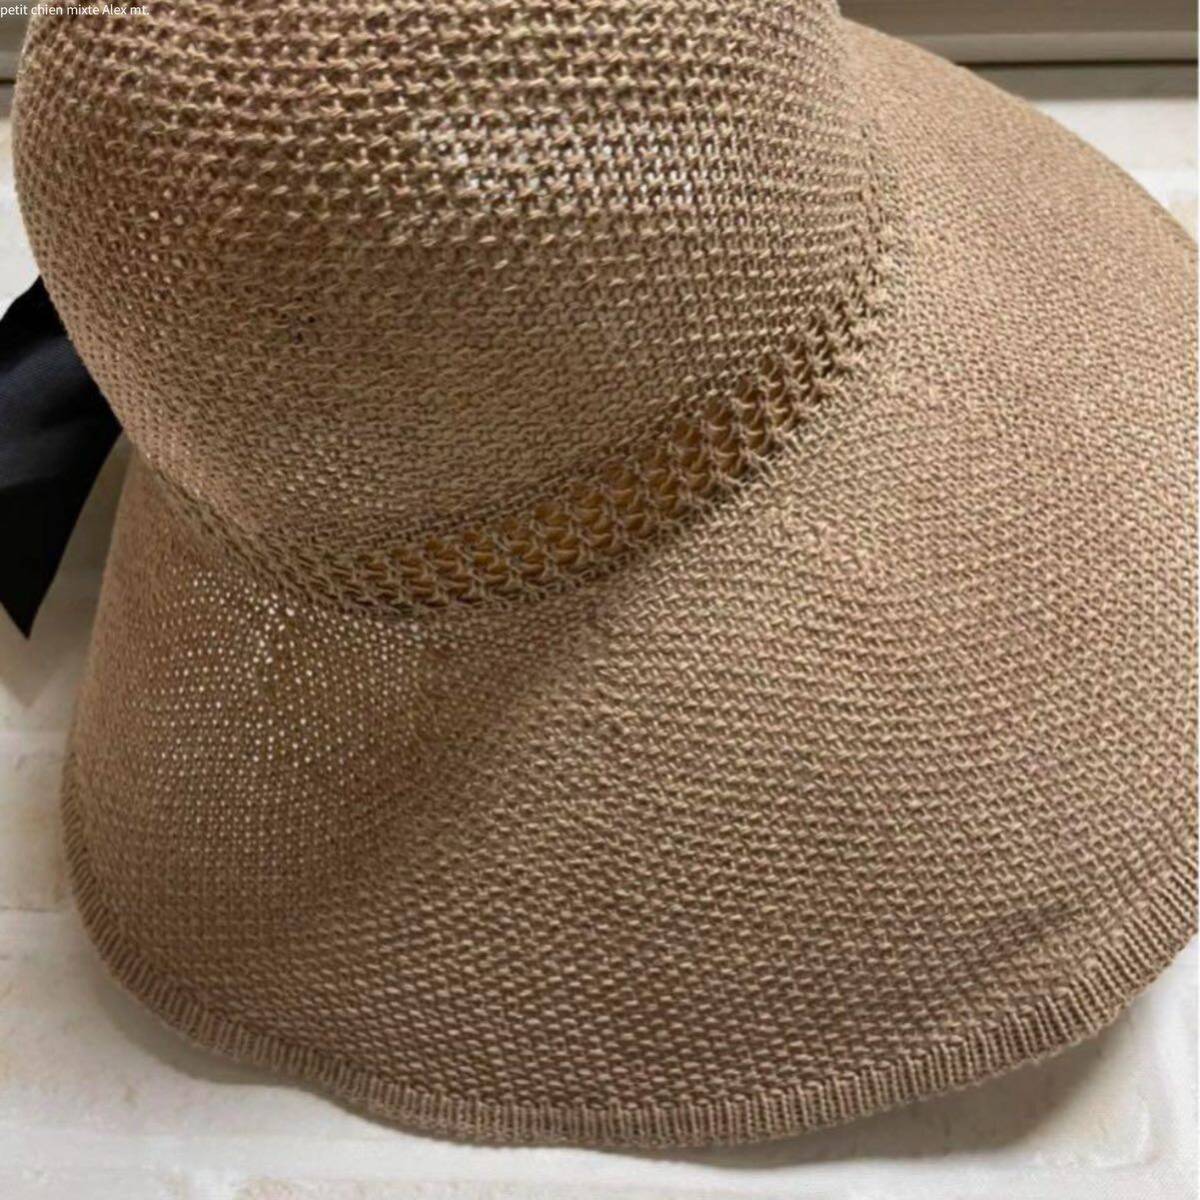 麦わら帽子 サンバイザー レディース リボン サイズ調整可能 通気性帽子 ハット 麦わら帽子 ストローハット ベージュ 